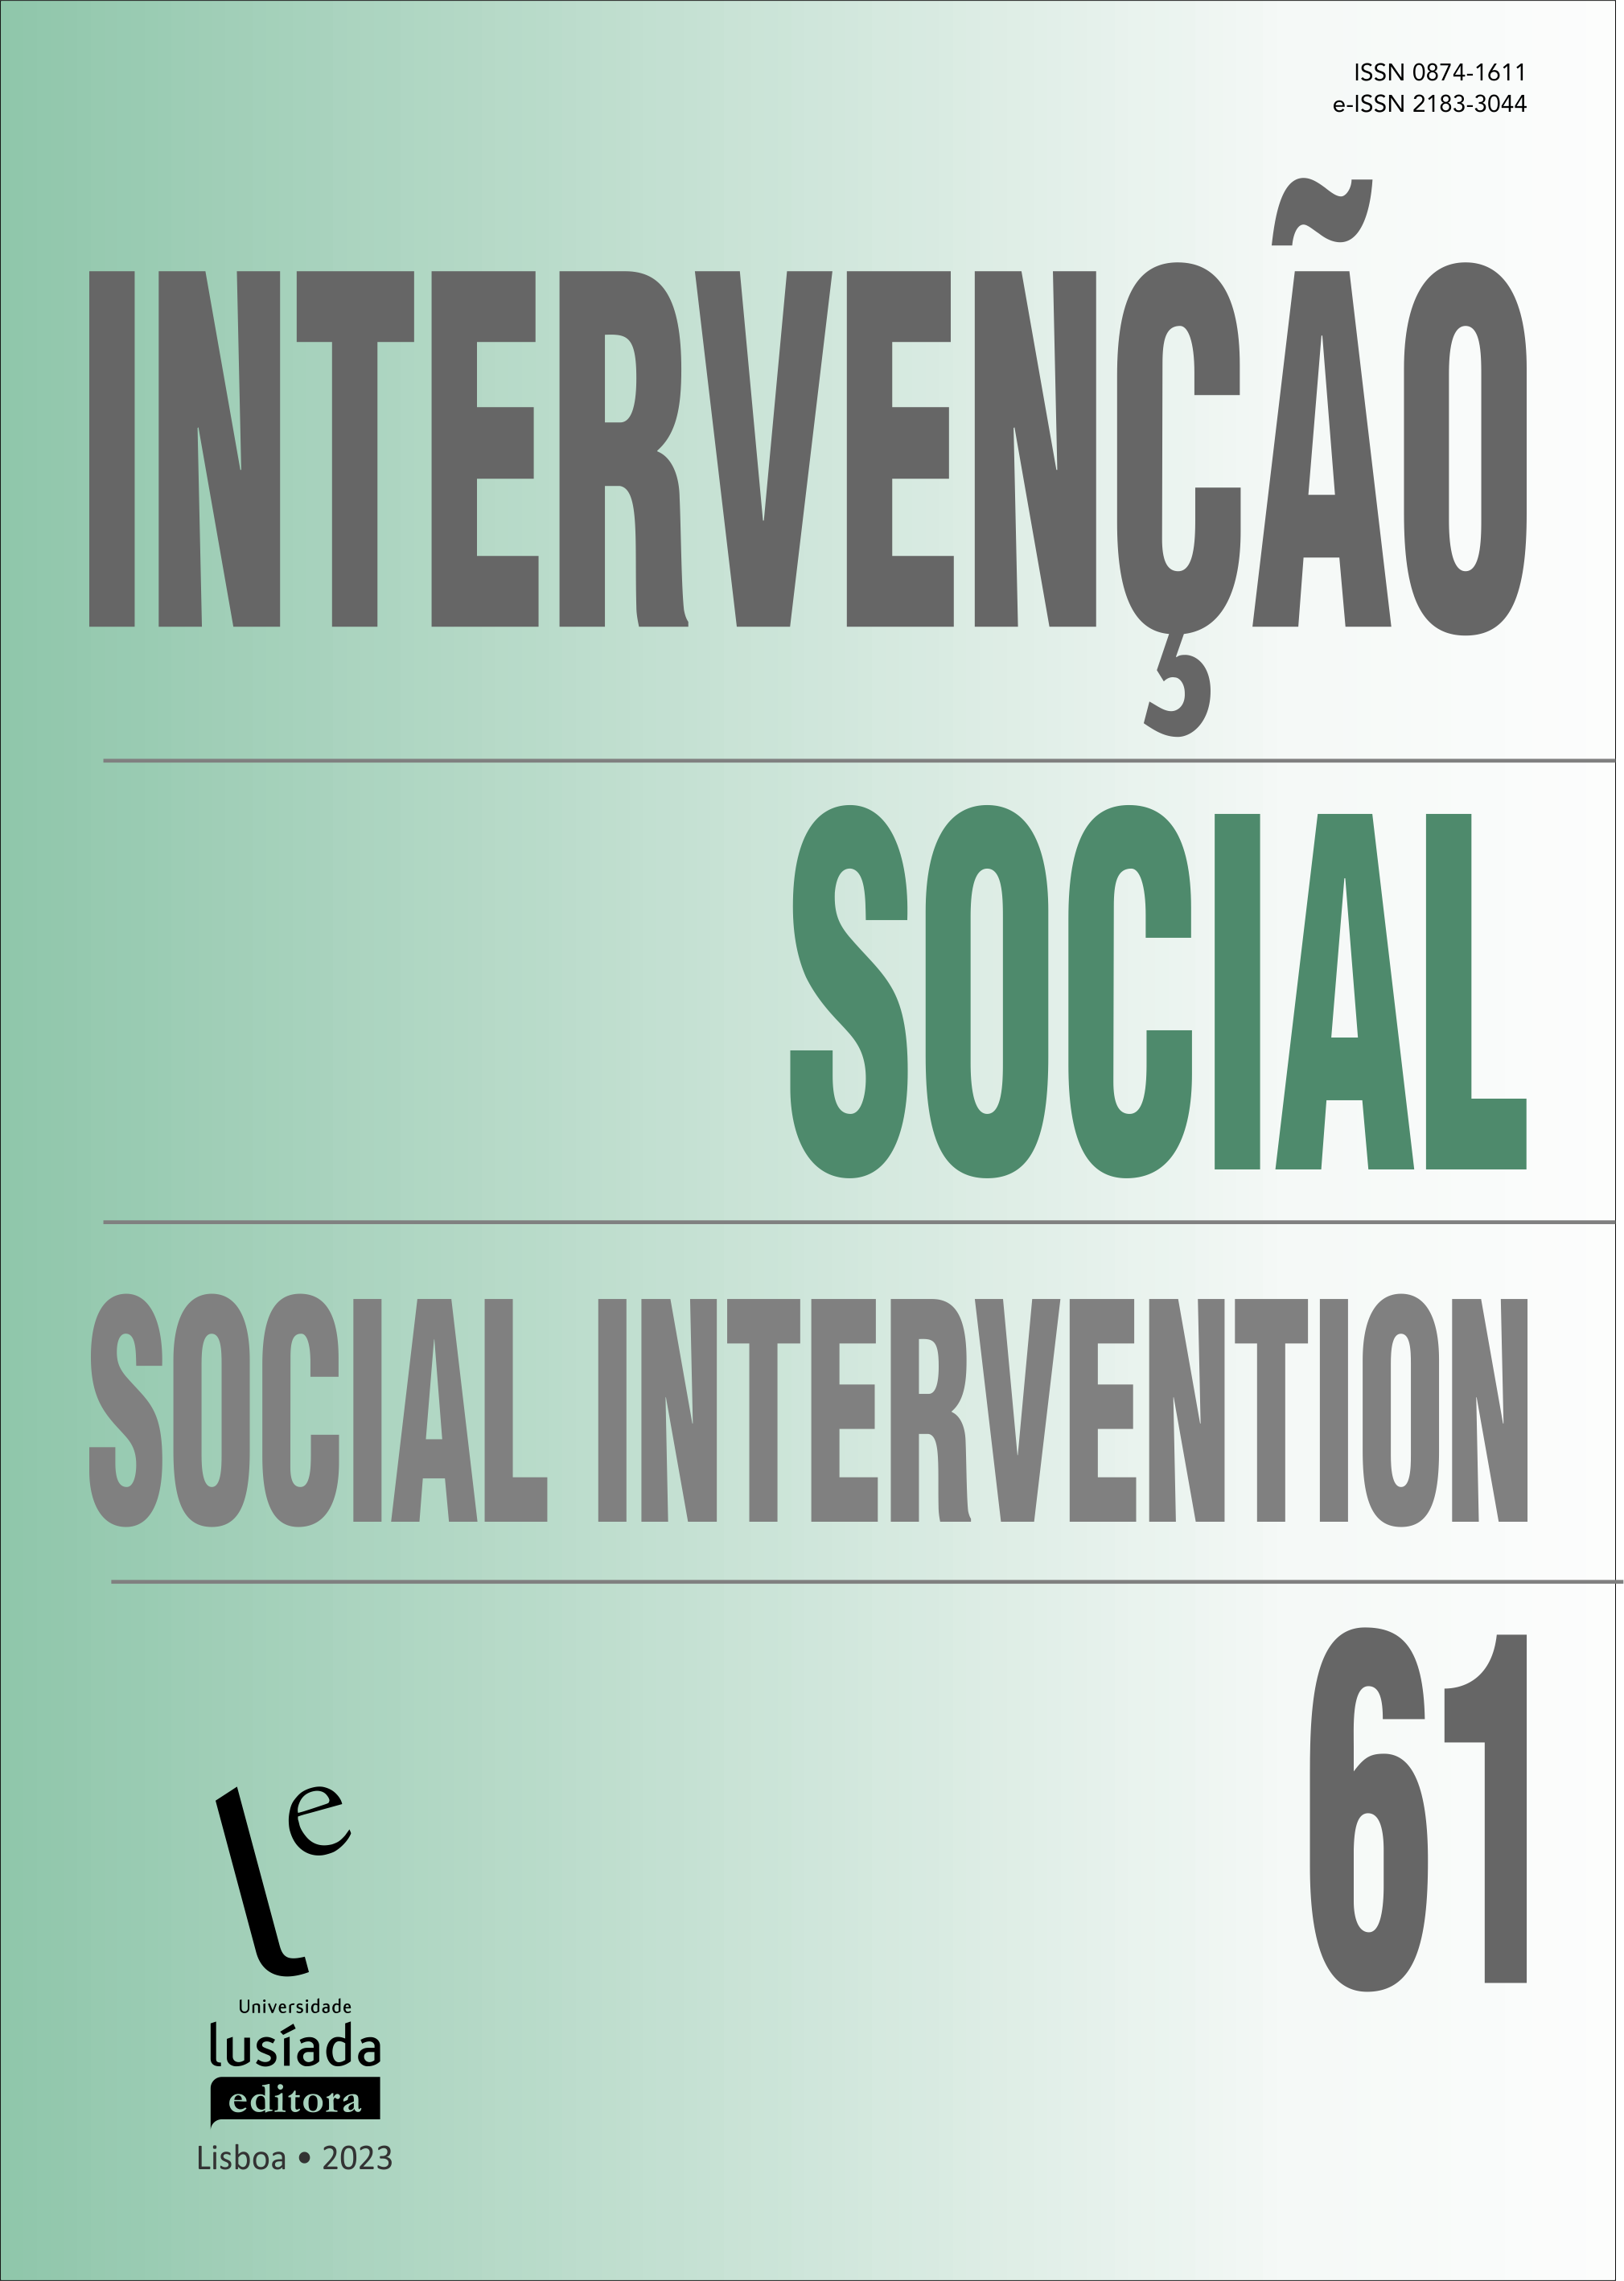 Intervenção Social, n.º 61 (2023) - Universidade Lusíada Editora